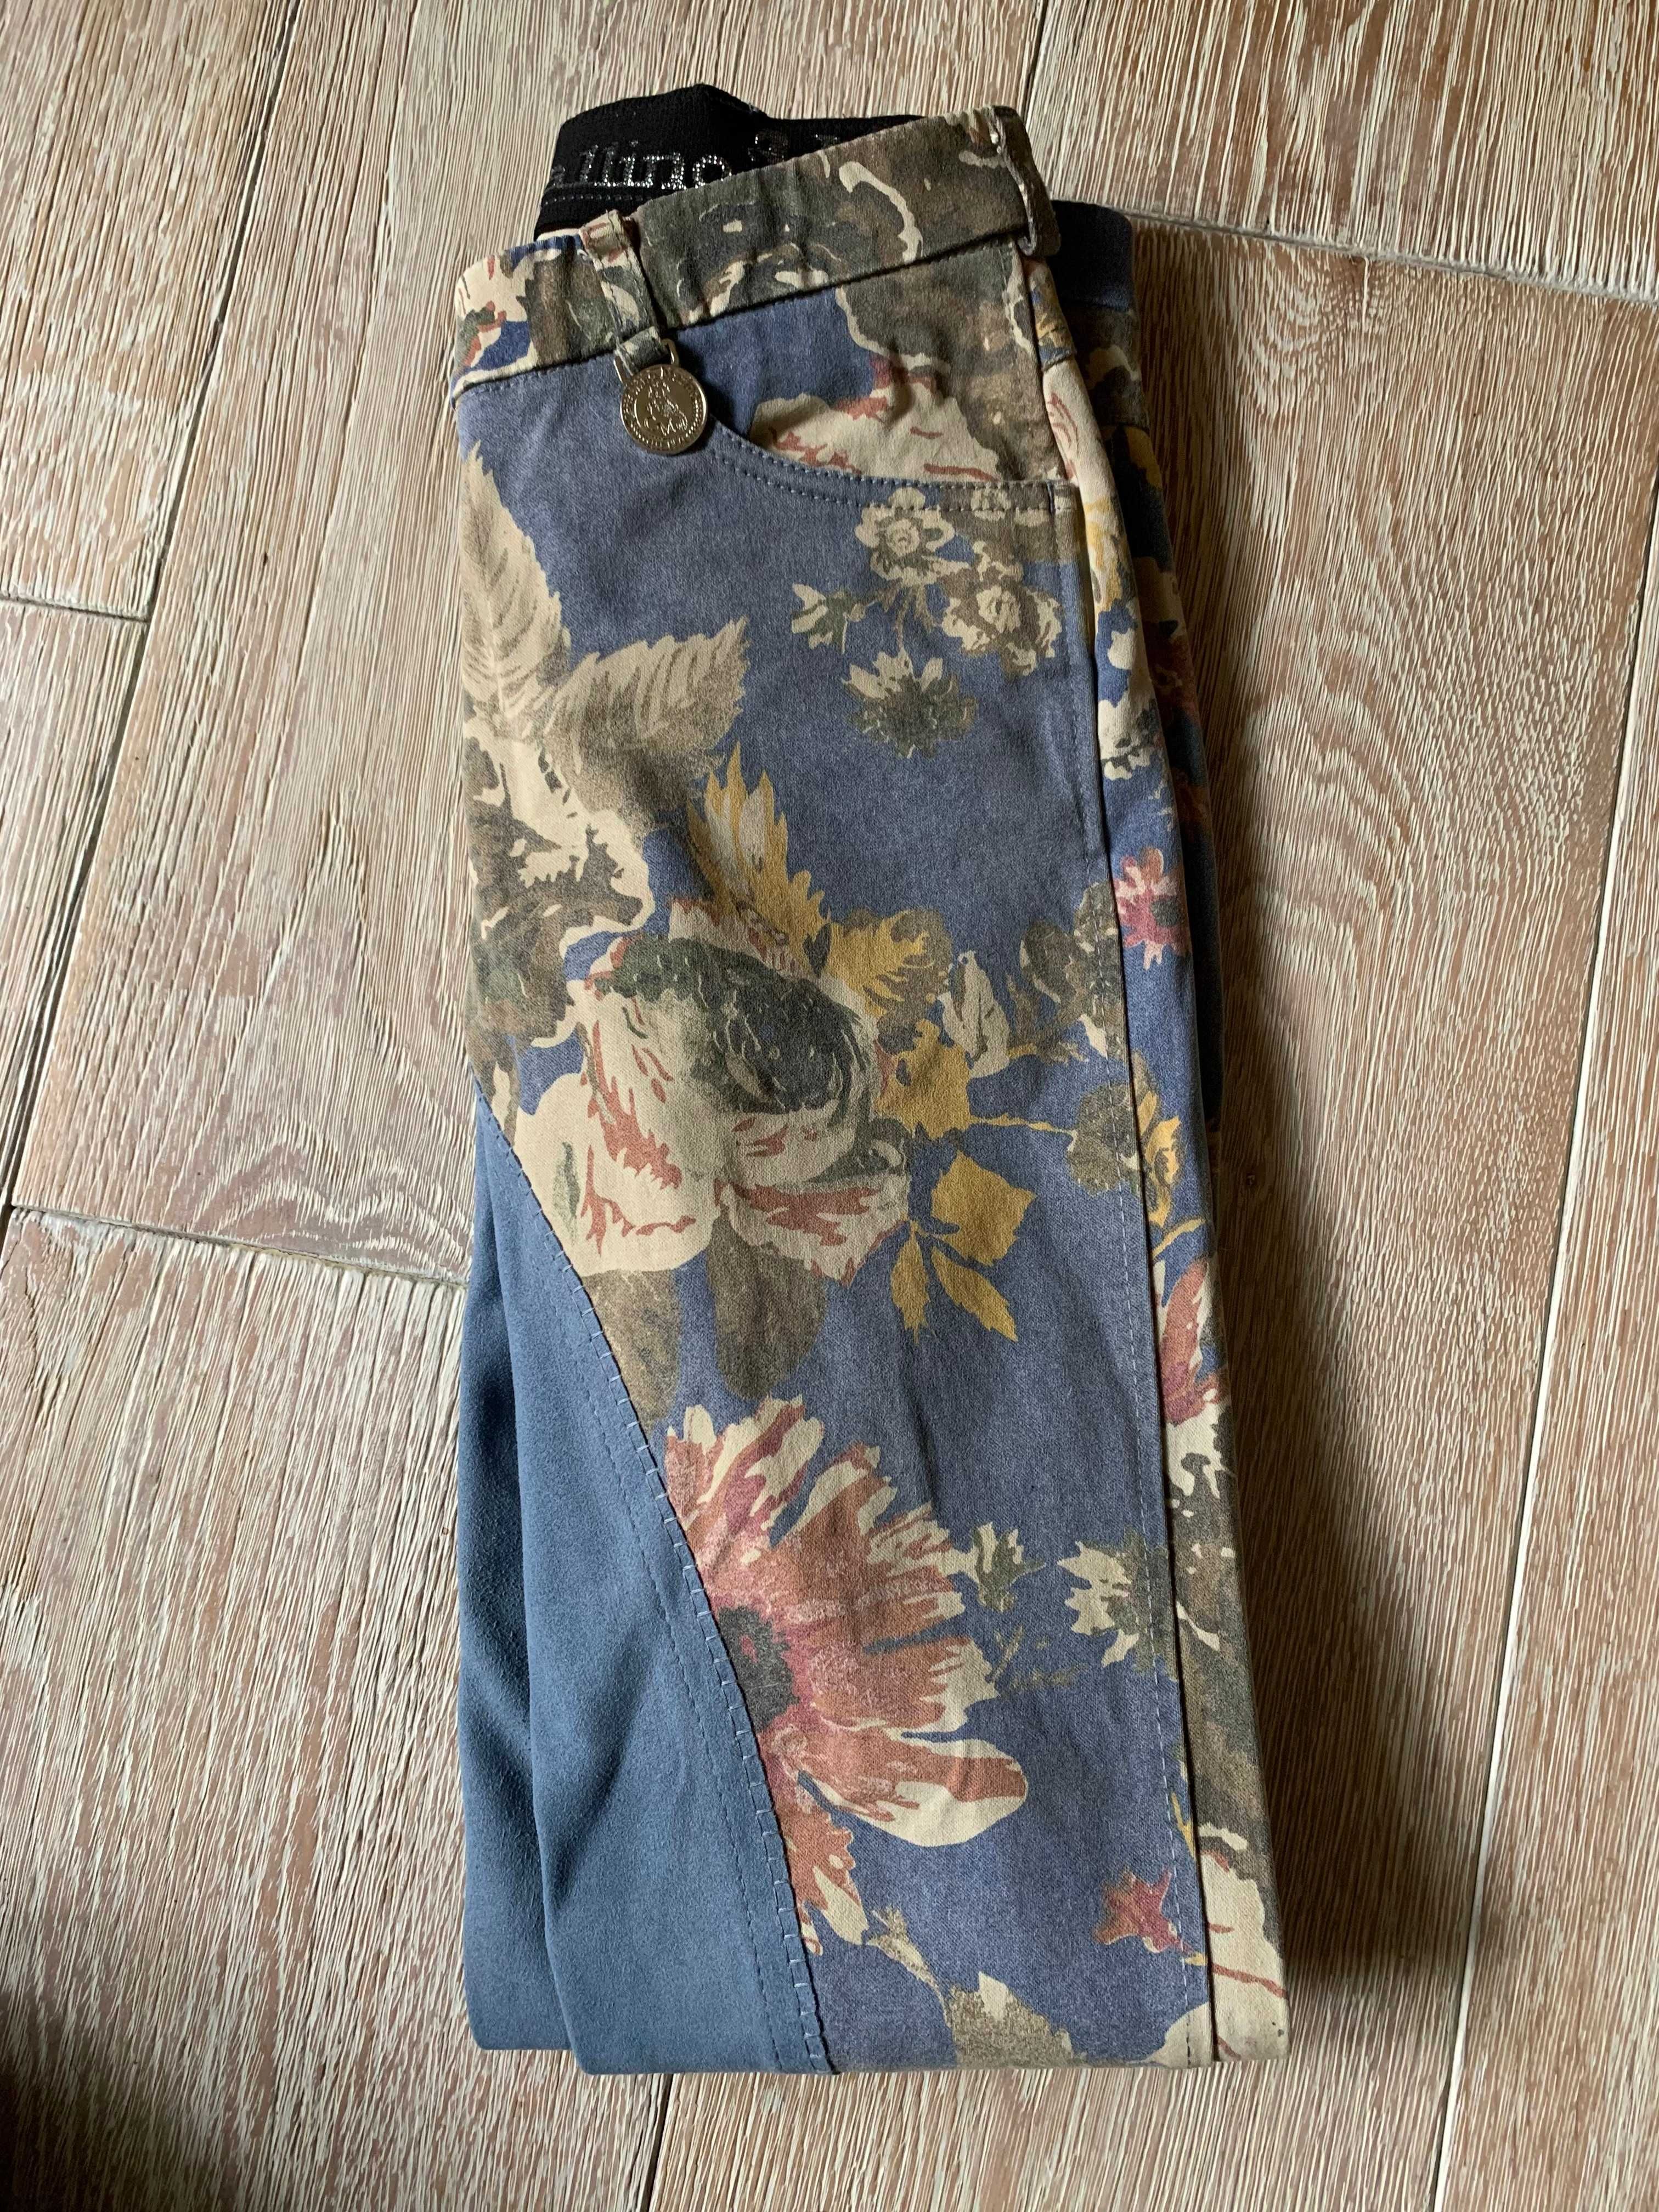 Bryczesy Cavallino Marino jeansowe w kwiaty r. 36